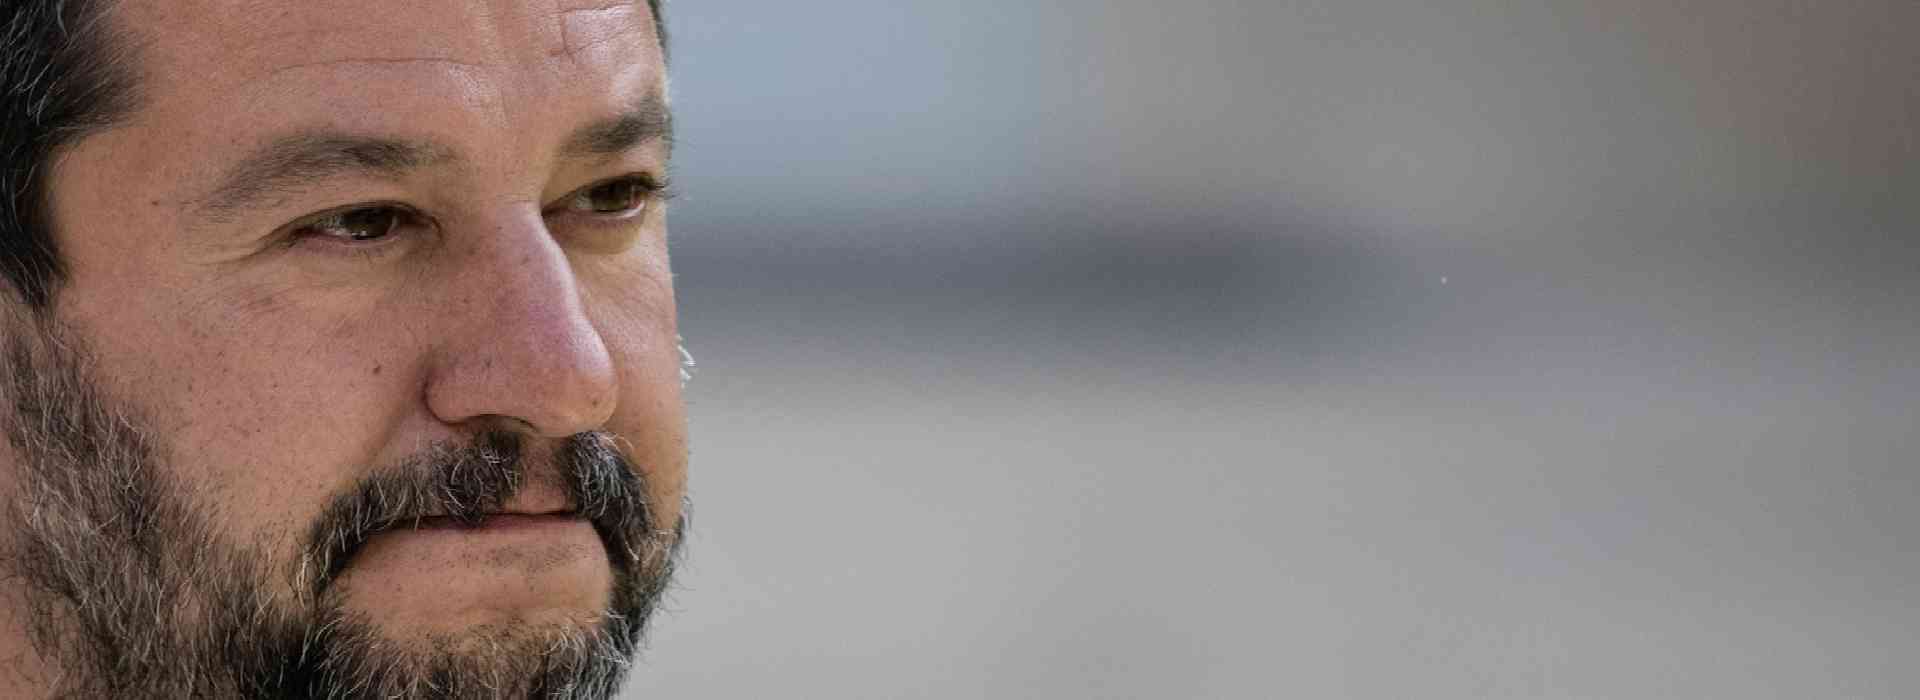 Nave Gregoretti, Salvini assolto perché "il fatto non sussiste"